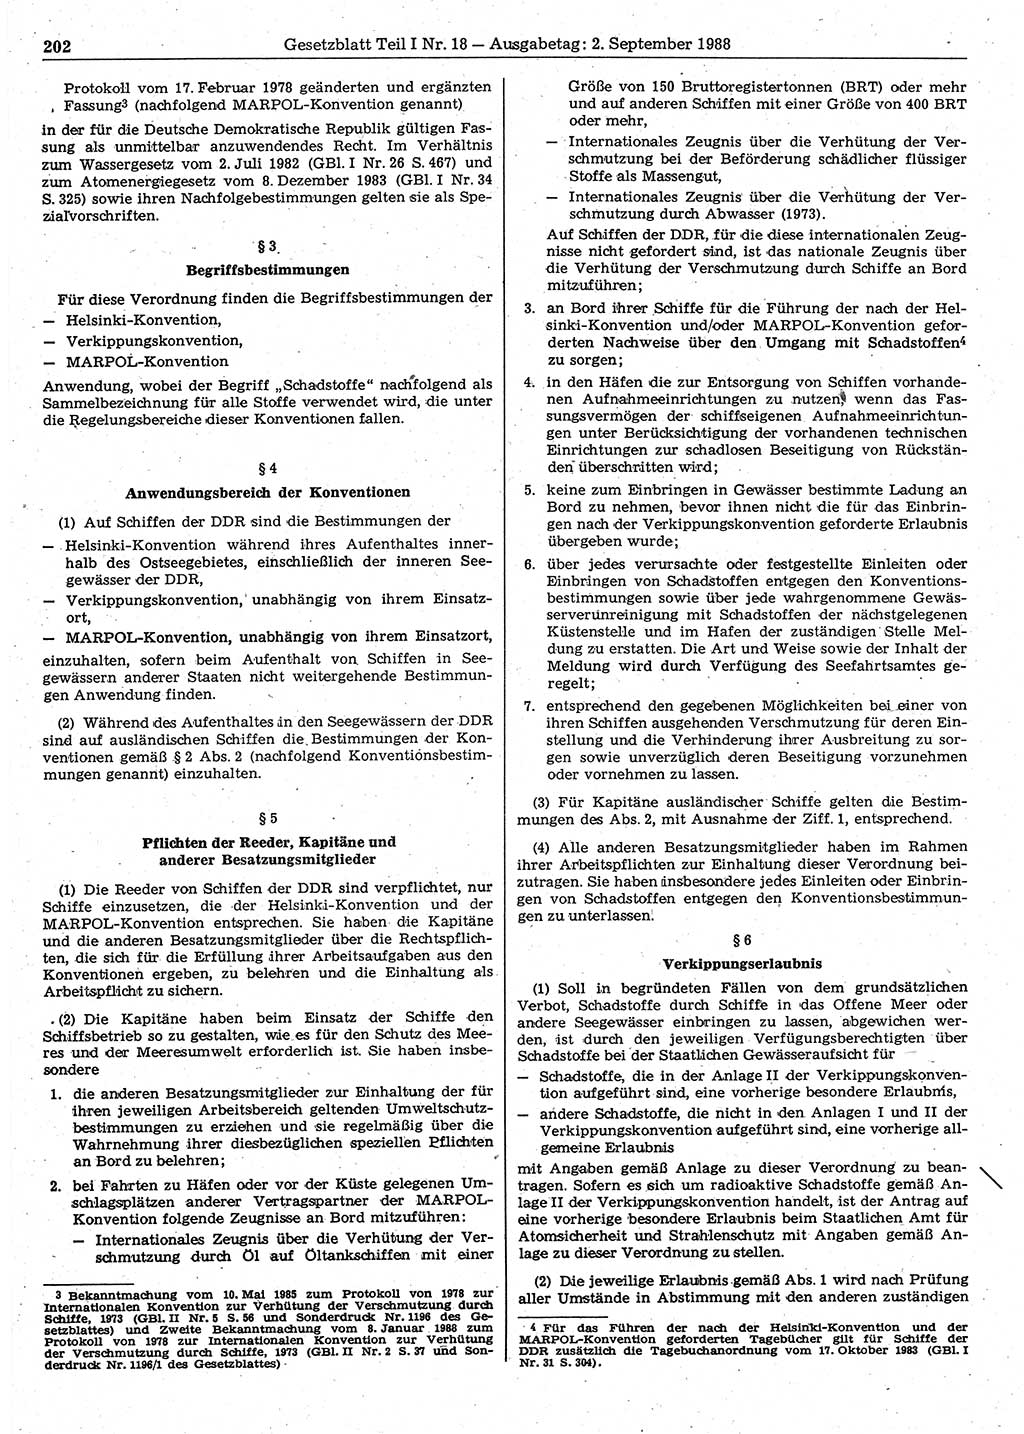 Gesetzblatt (GBl.) der Deutschen Demokratischen Republik (DDR) Teil Ⅰ 1988, Seite 202 (GBl. DDR Ⅰ 1988, S. 202)